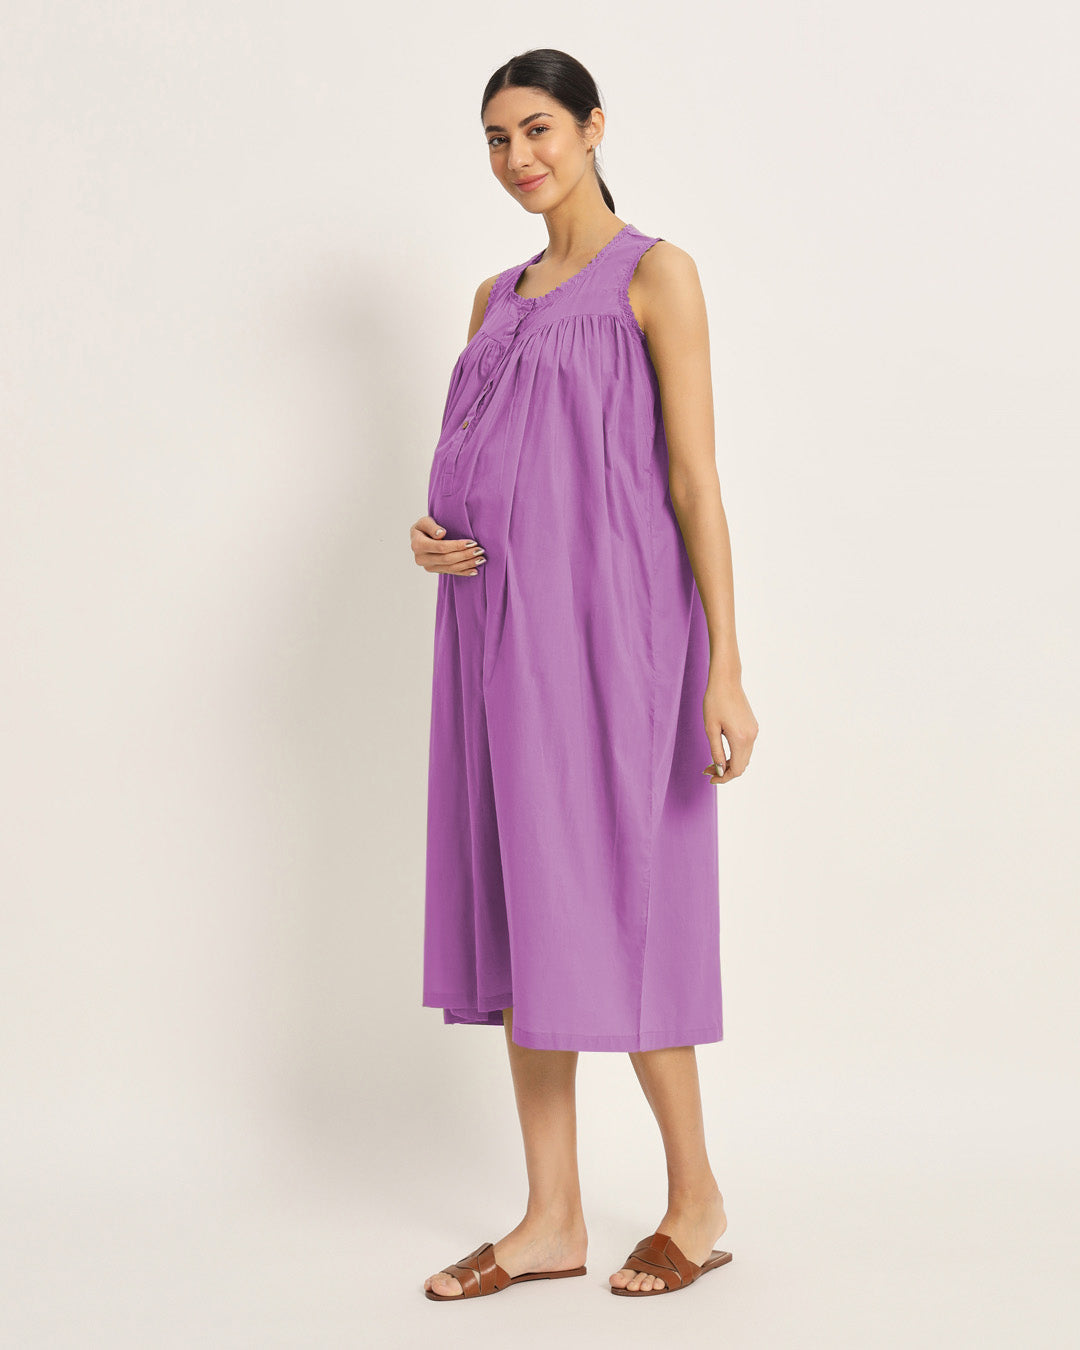 Combo: Black & Wisteria Purple Pregnan-Queen Maternity & Nursing Dress